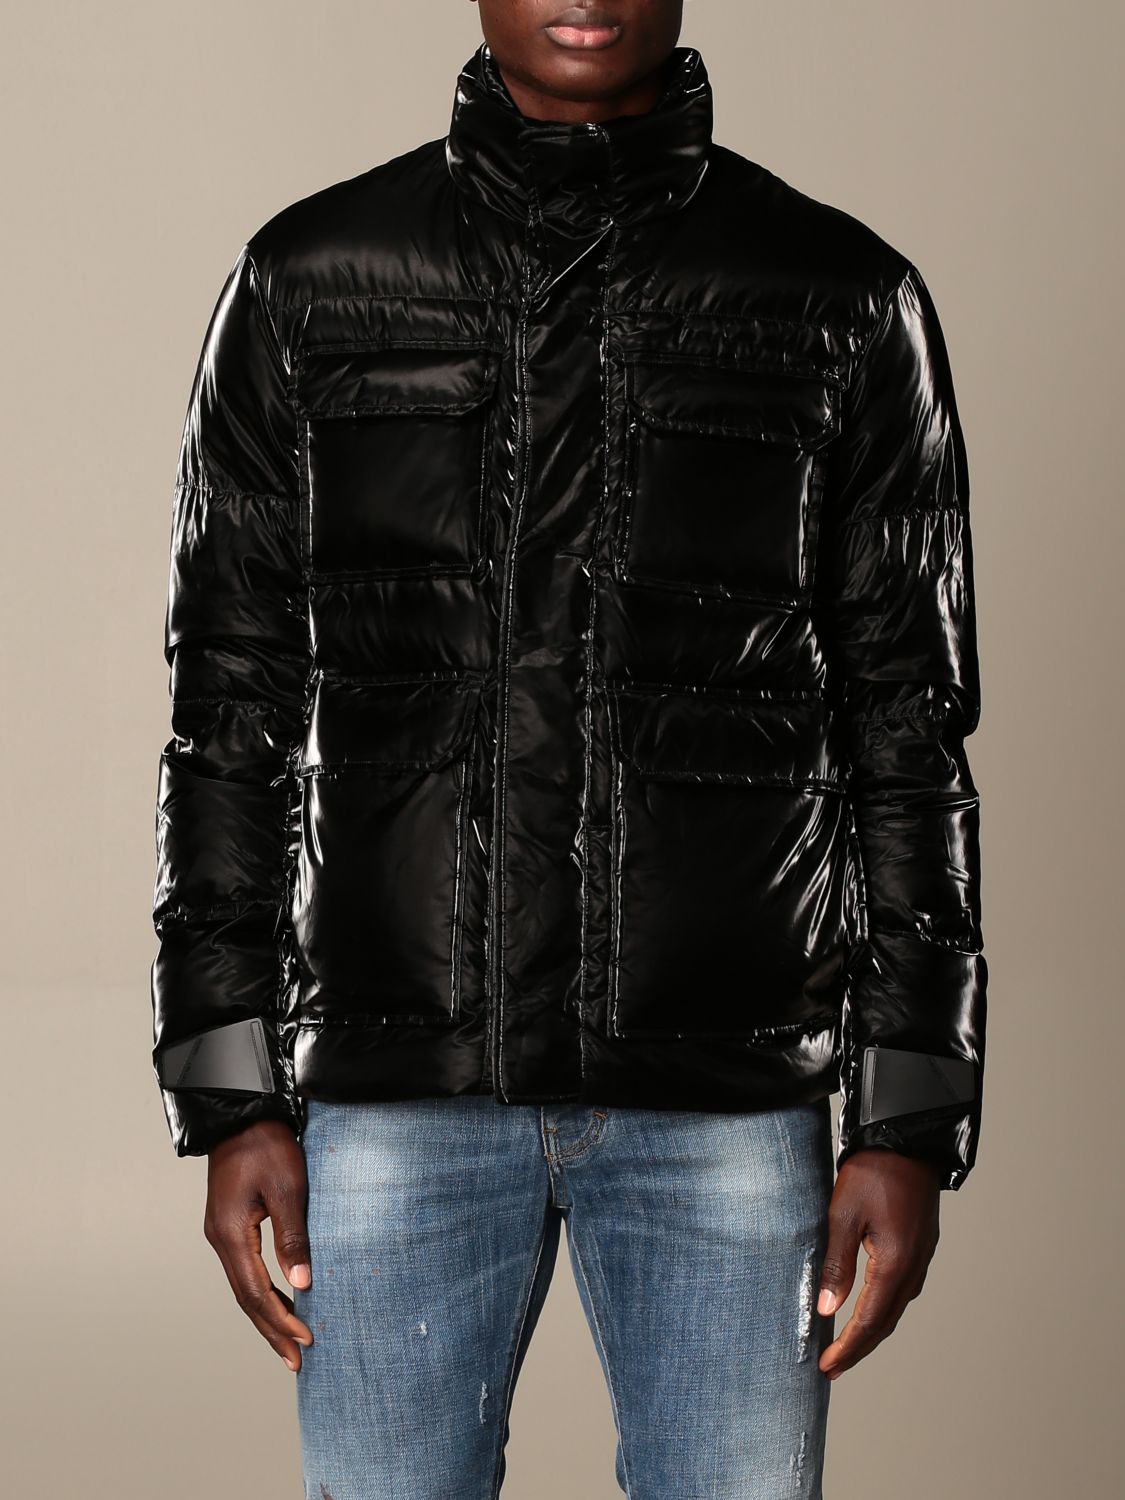 EMPORIO ARMANI: down jacket in shiny nylon with logo - Black | Emporio Armani jacket 6H1BF6 1NLTZ online